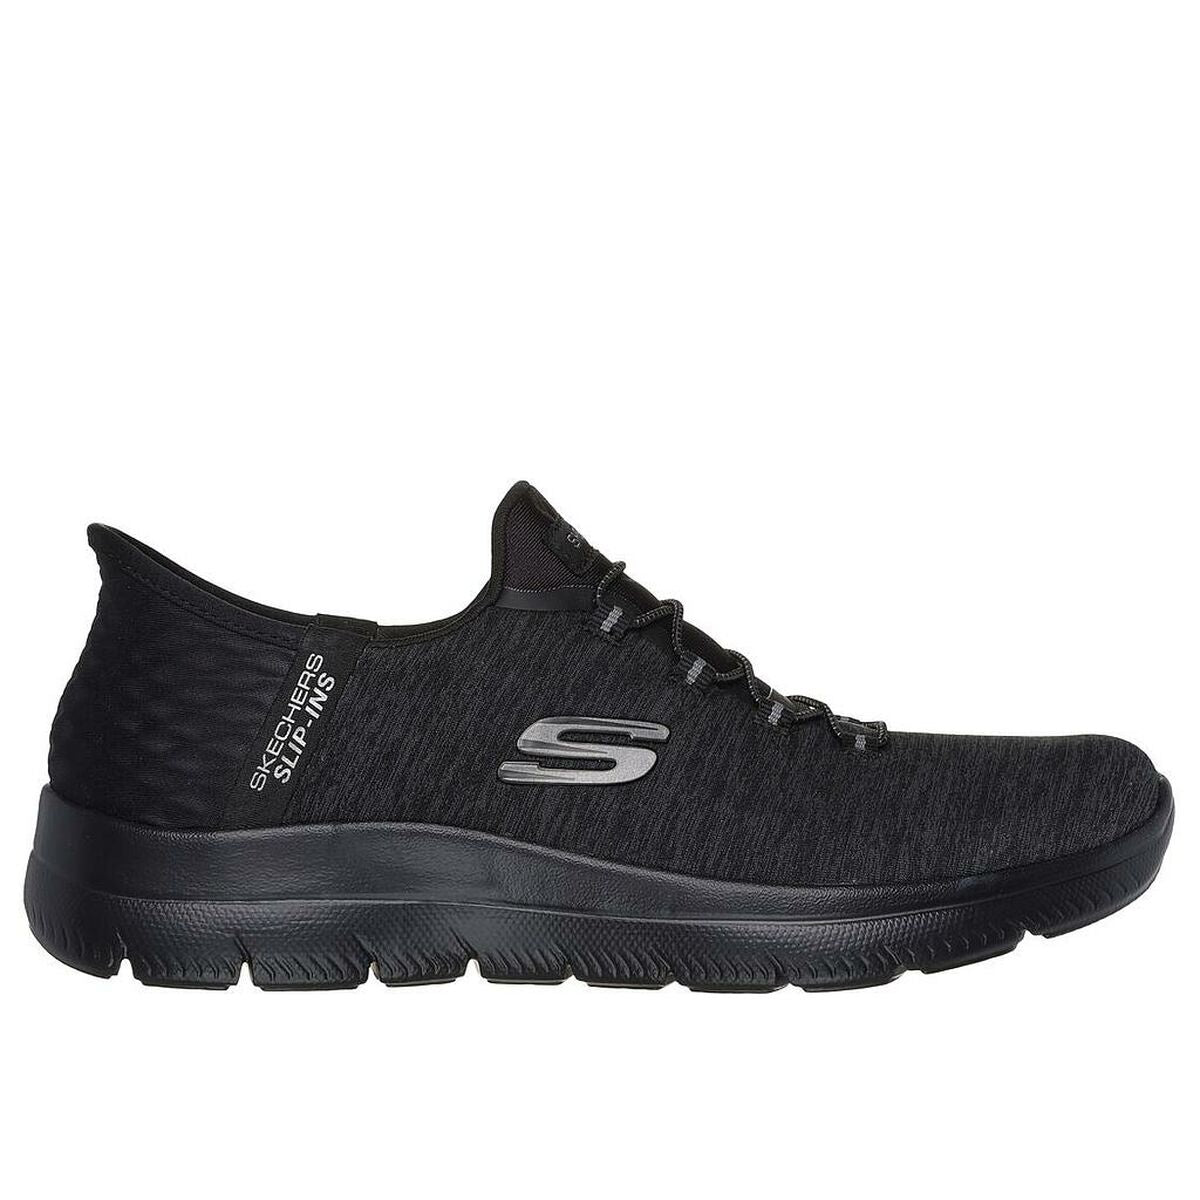 Walking Shoes for Women Skechers SUMMITS 149937 Black